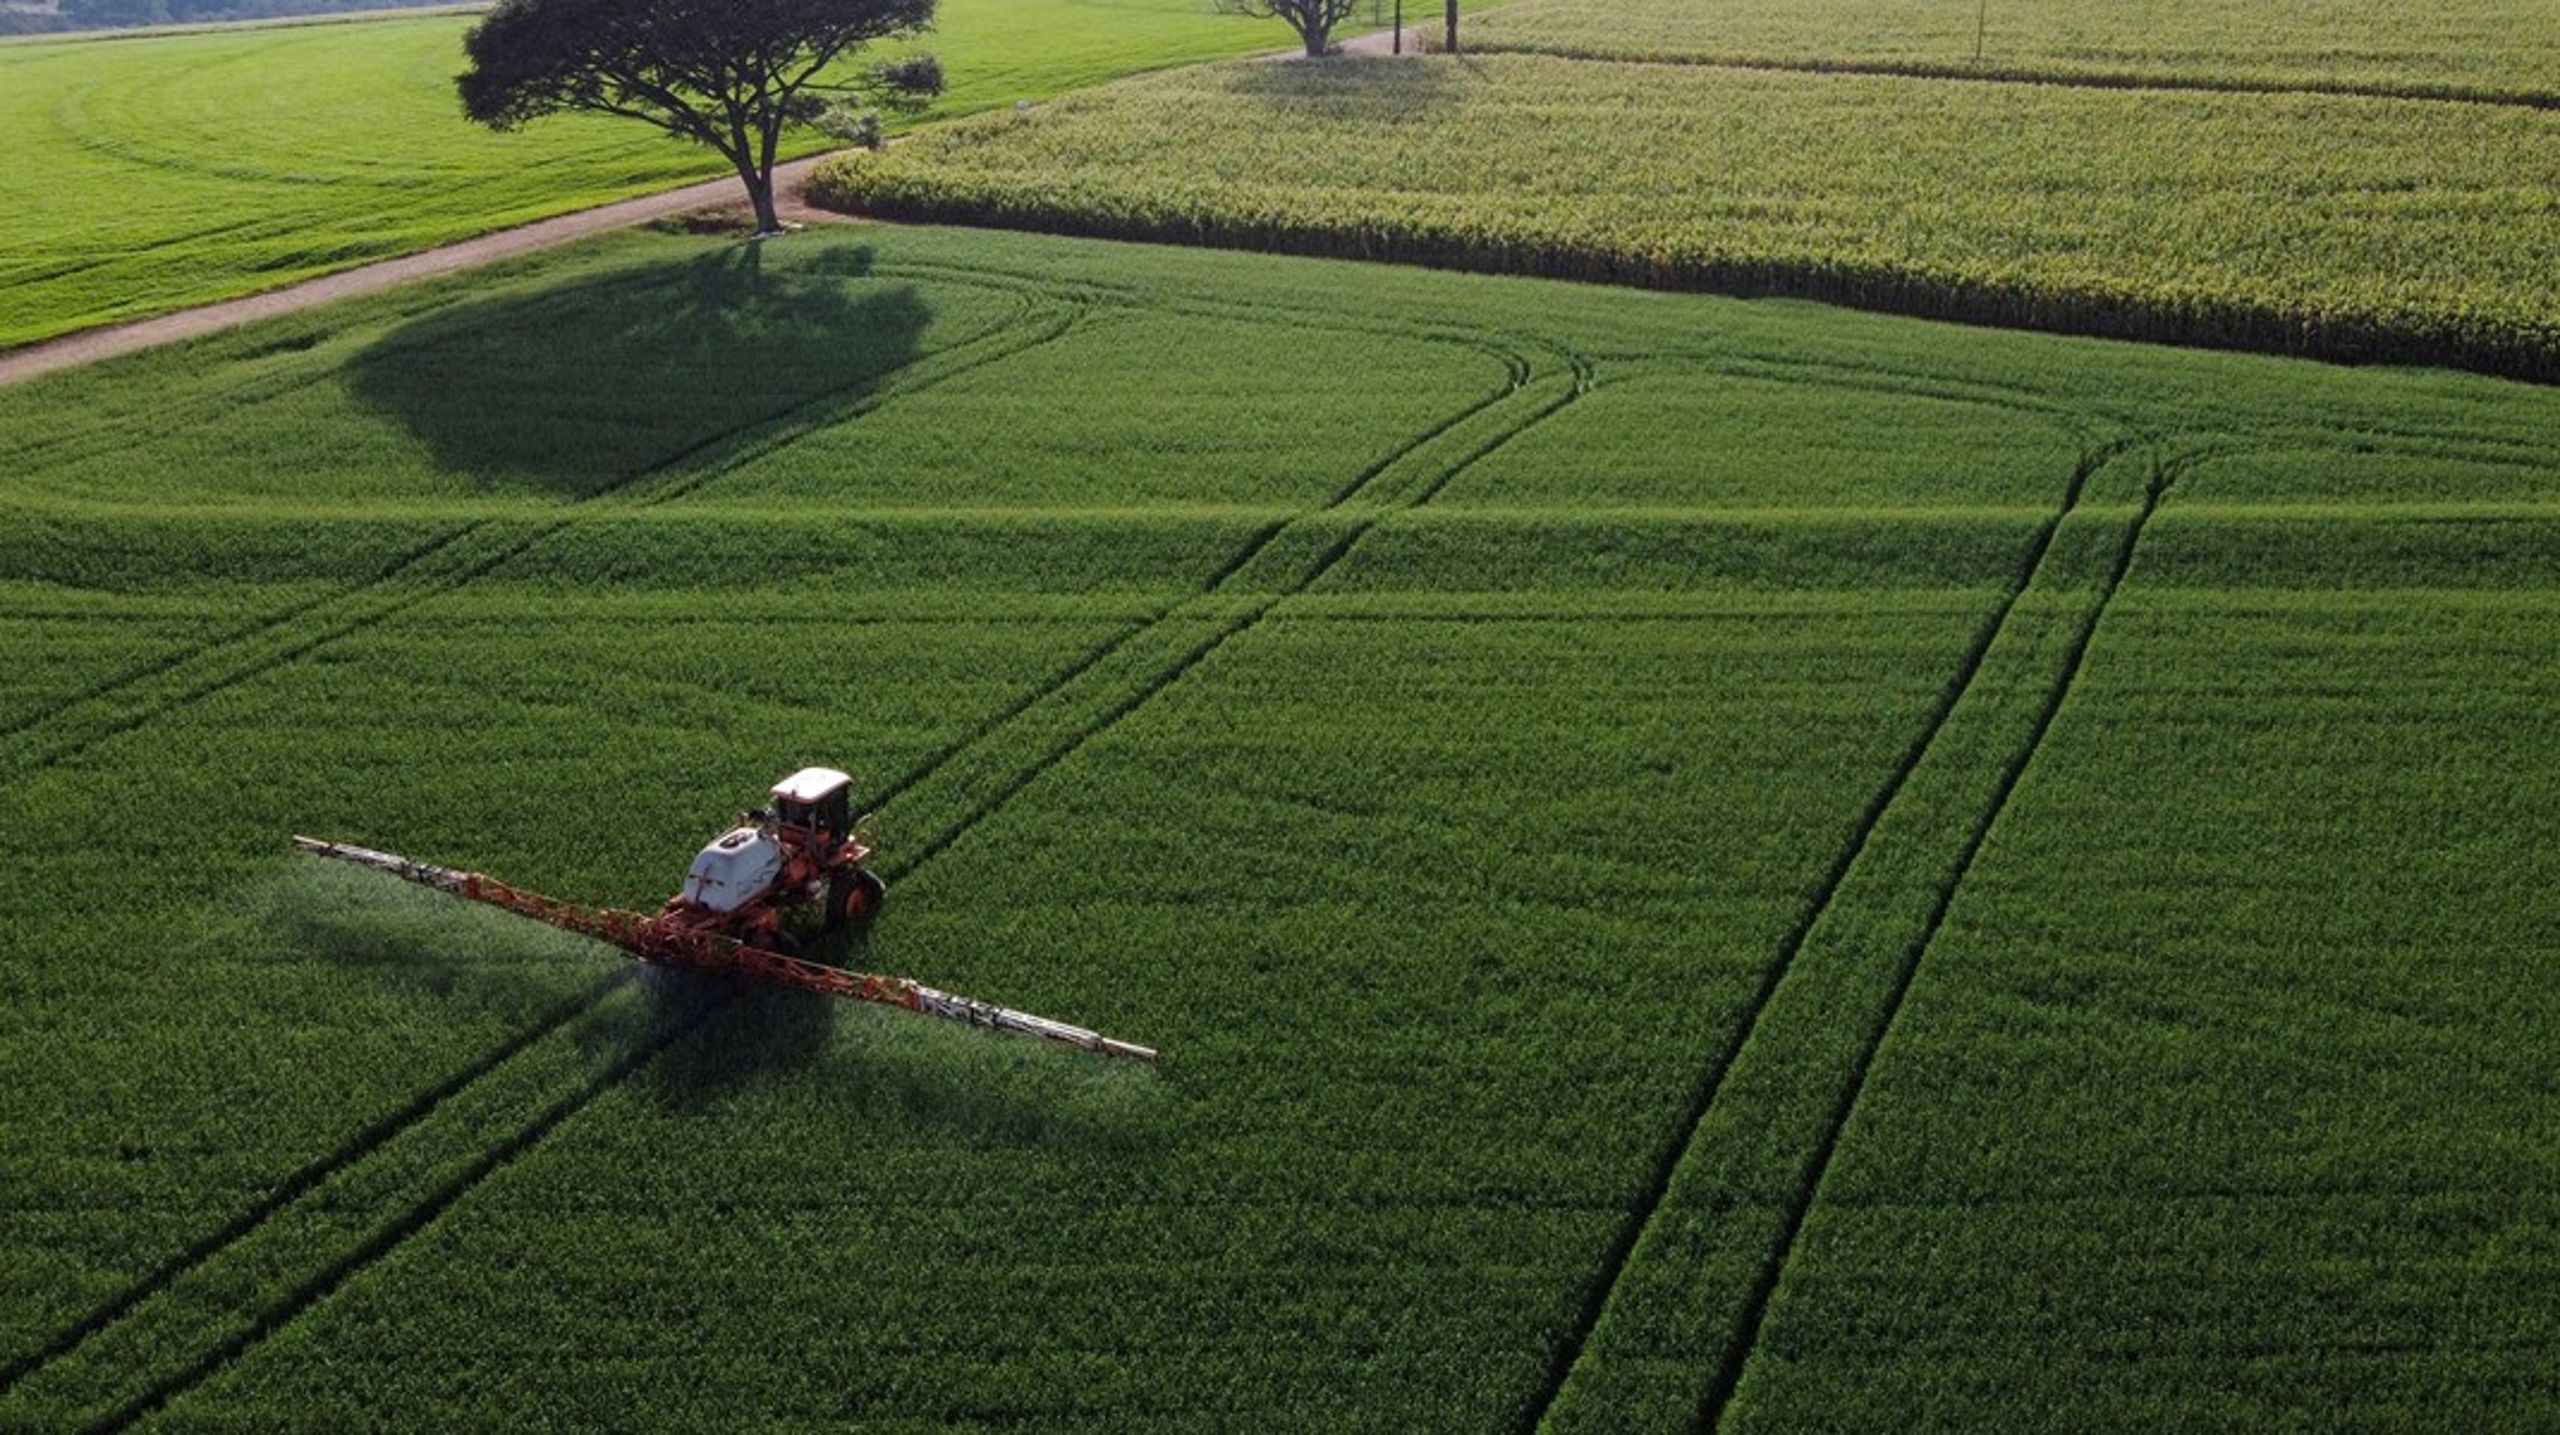 Støtten til Europa-Kommissionens forslag om reduktion af pesticider i landbruget svinder bort efter påbegyndelsen af Ukrainekrigen, skriver Emmanuel Molding Nielsen.